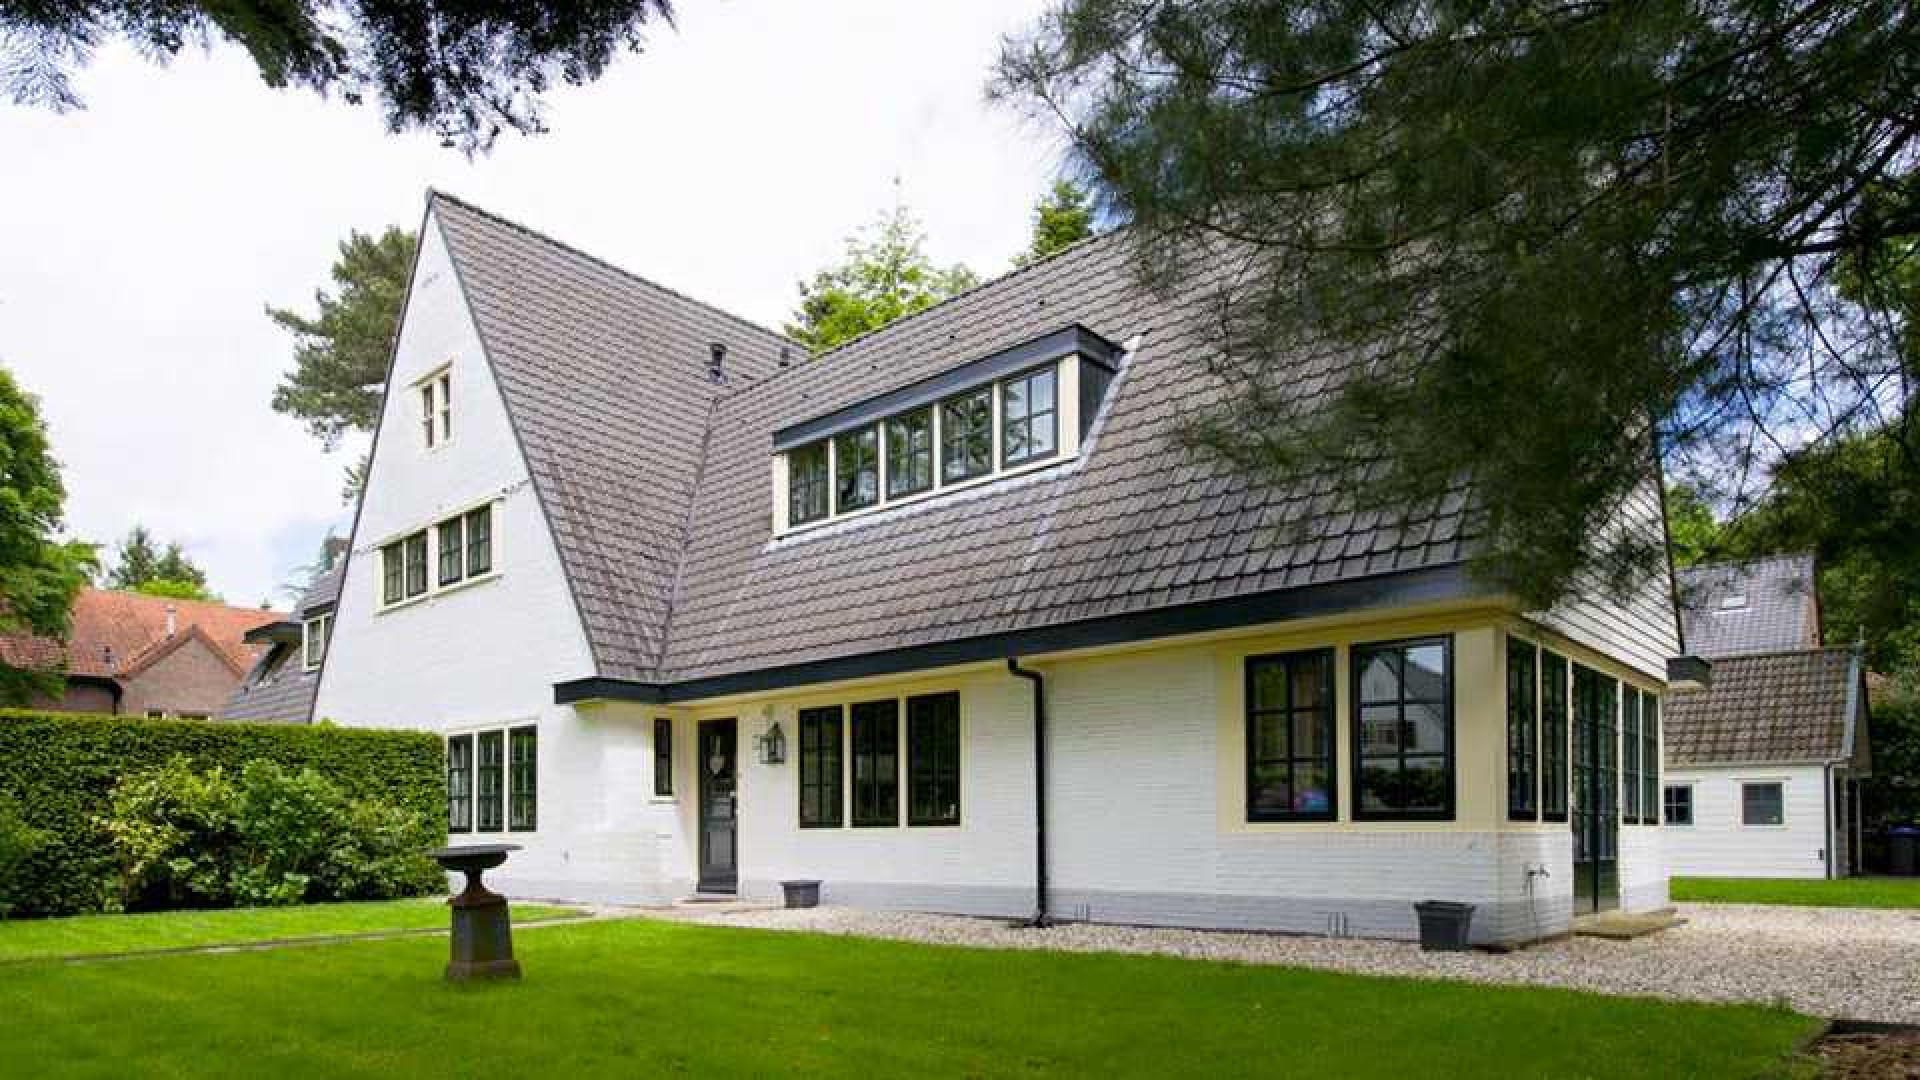 Villa waar Koen Everink werd omgebracht in diepste geheim verkocht. Zie foto's 1